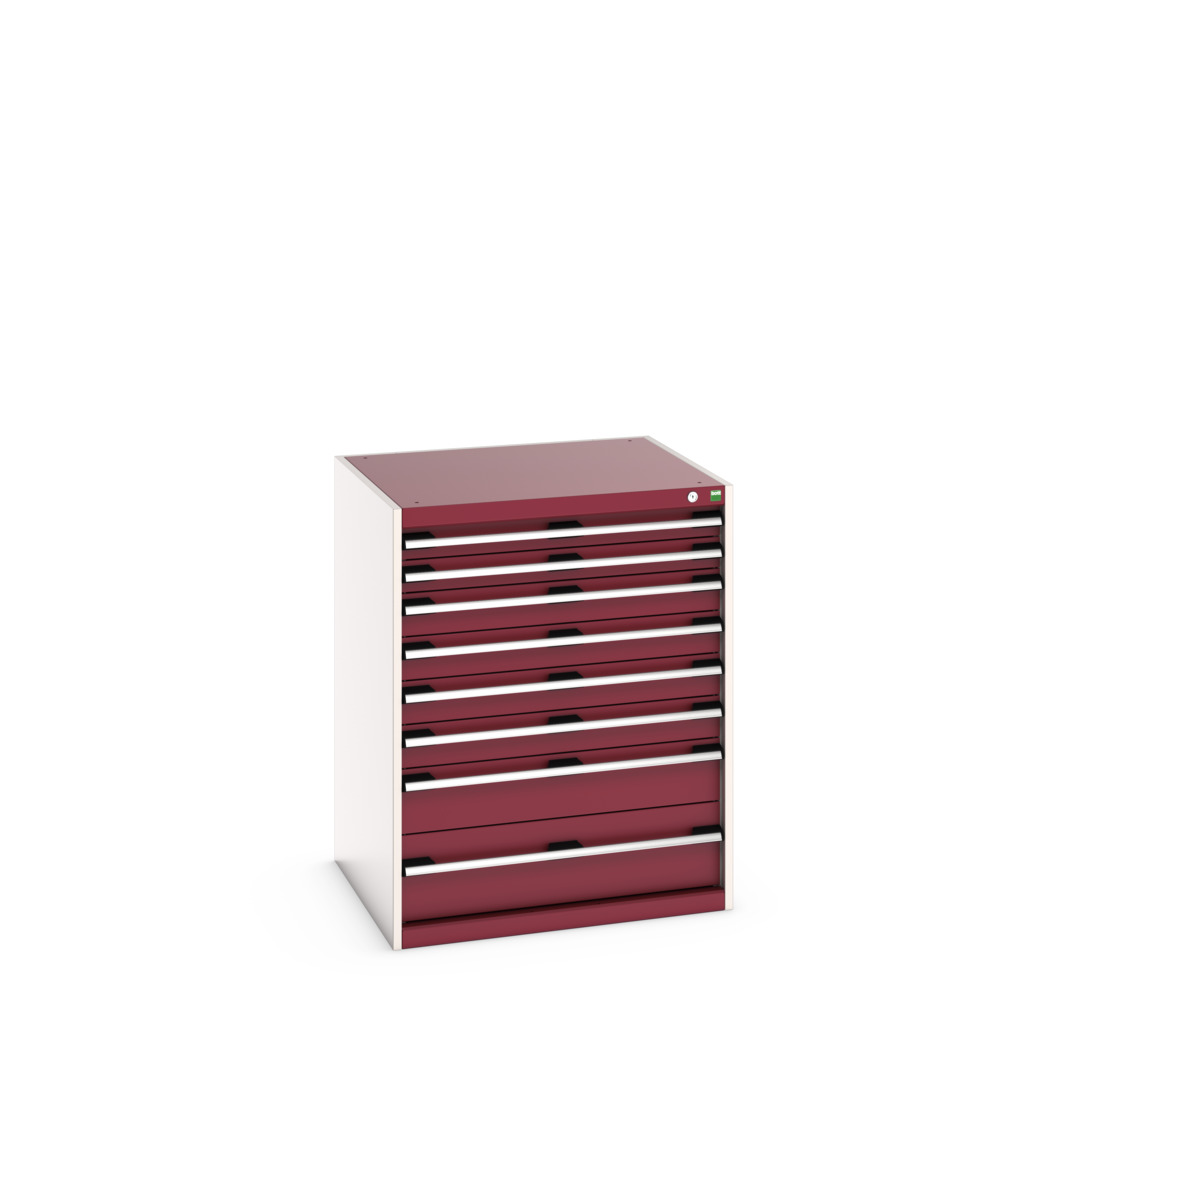 40028029.24V - cubio drawer cabinet